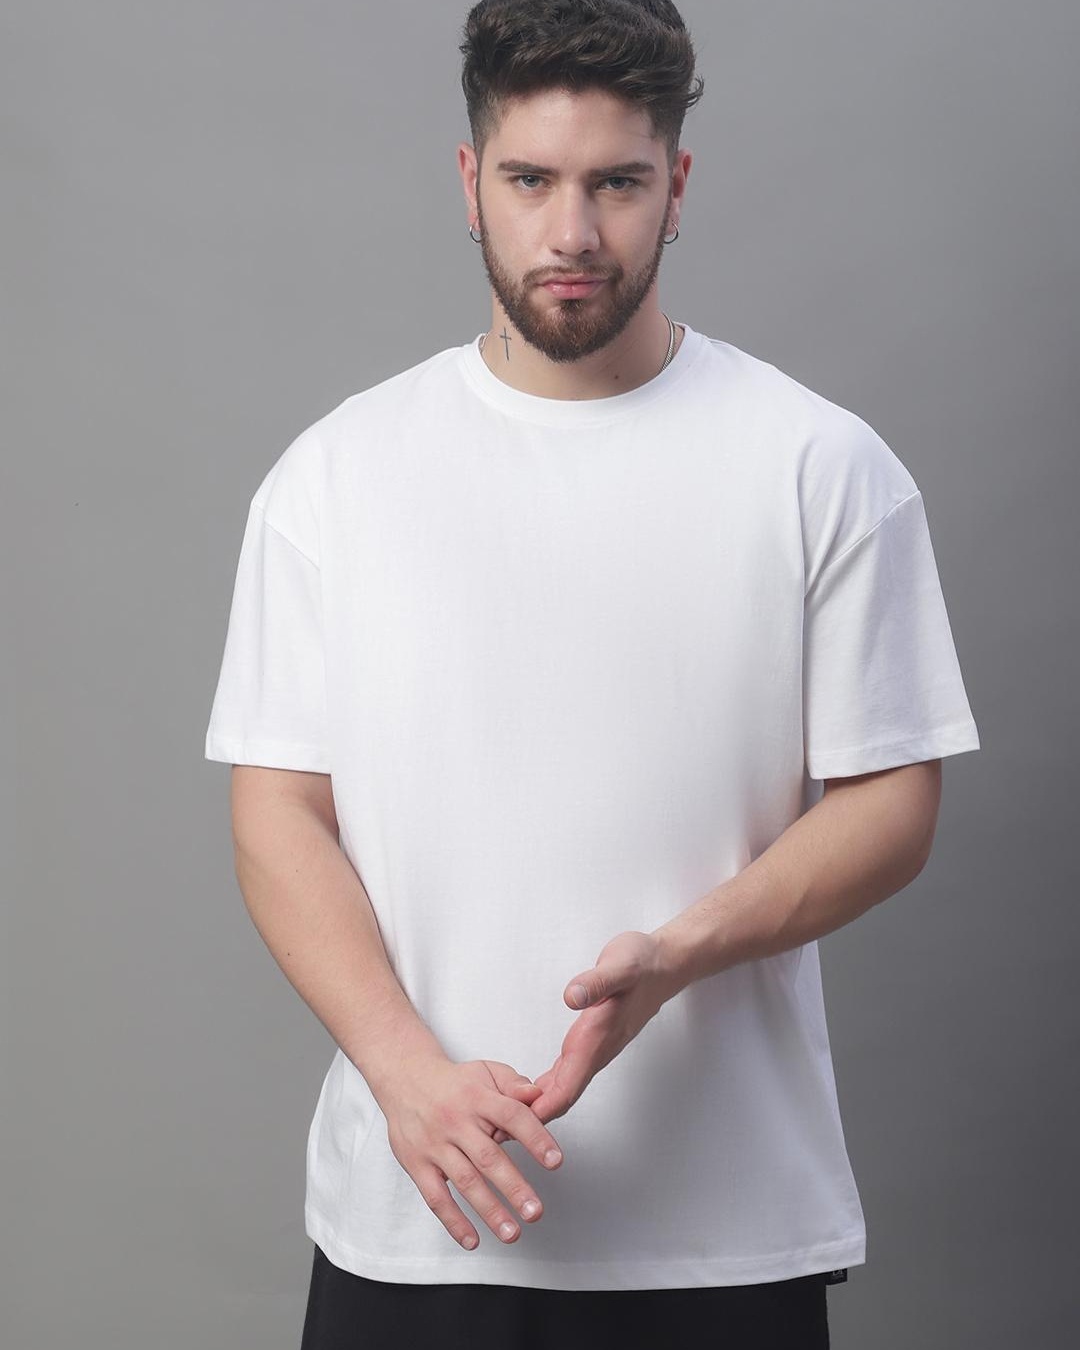 Buy Men's White Super Loose Fit T-shirt Online at Bewakoof